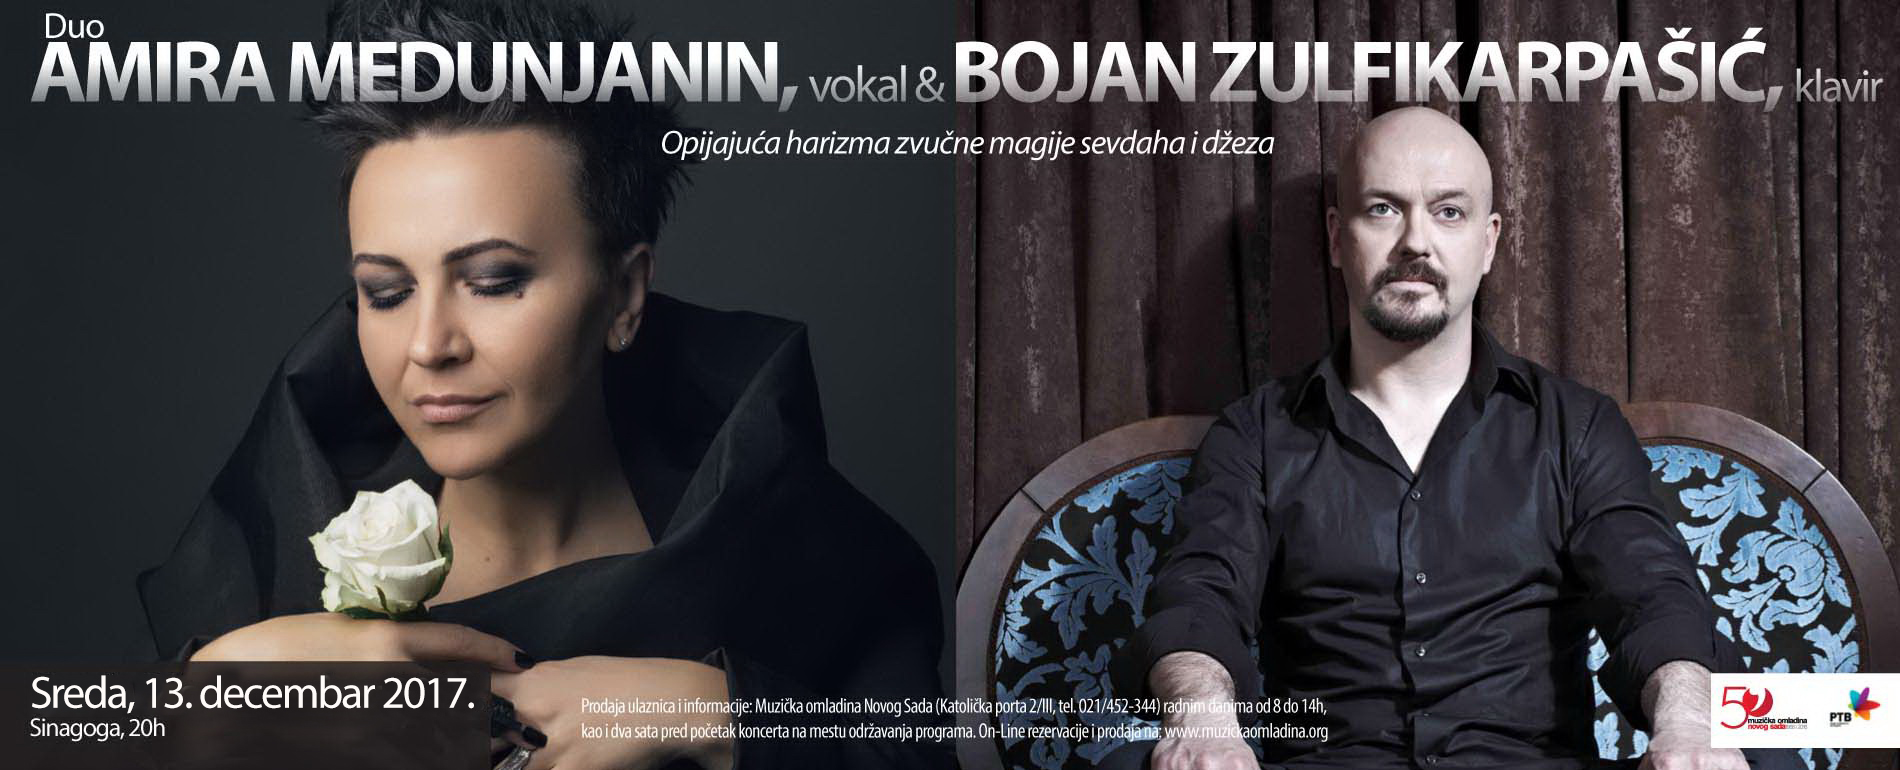 Amira Medunjanin & Bojana Zulfikarpašić 13.12. i 15.12.2017. Muzička omladina